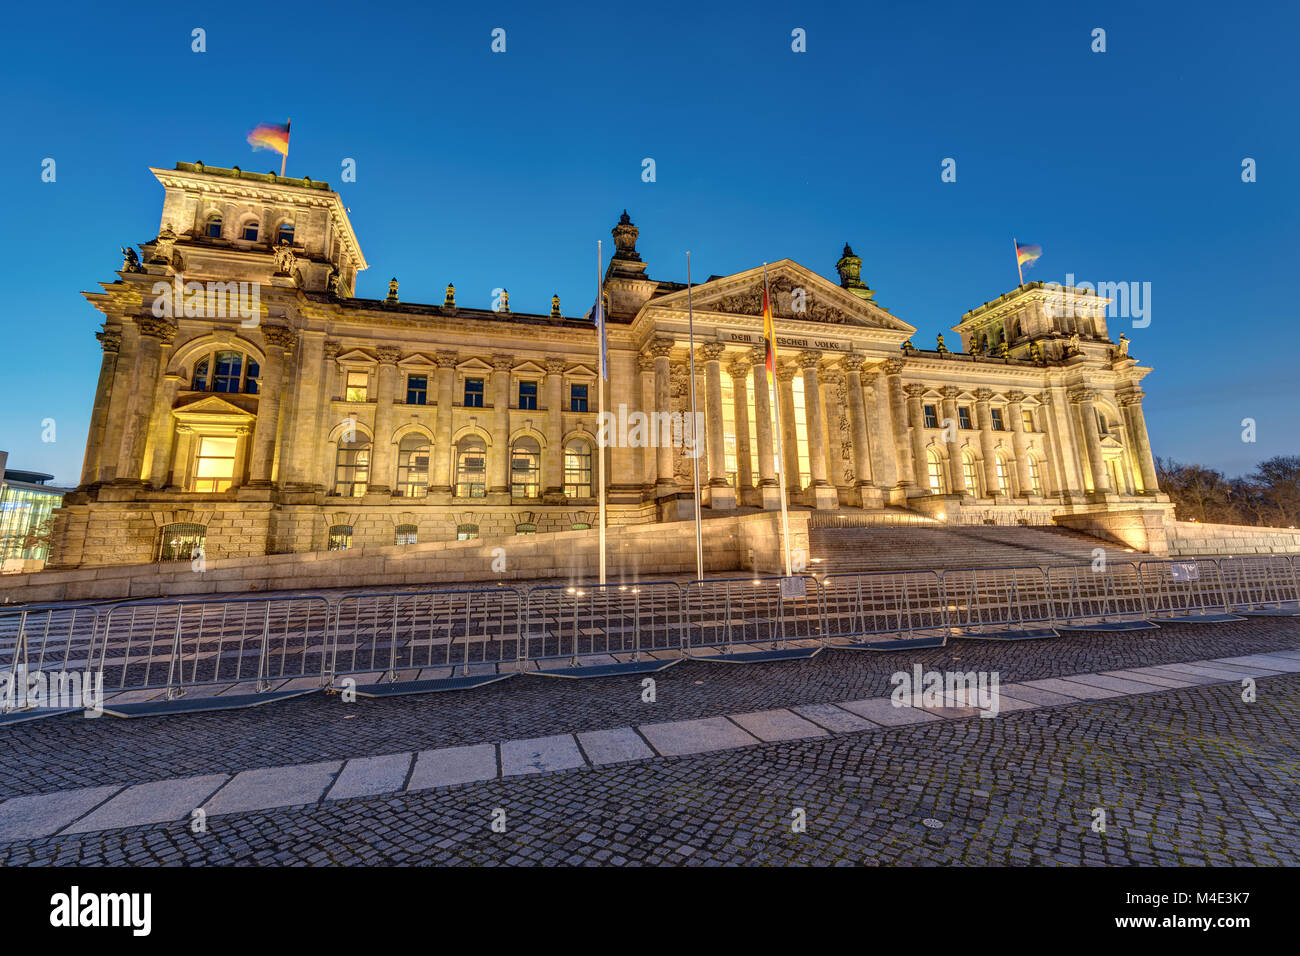 La célèbre Reichstag allemand à Berlin allumé à l'aube Banque D'Images